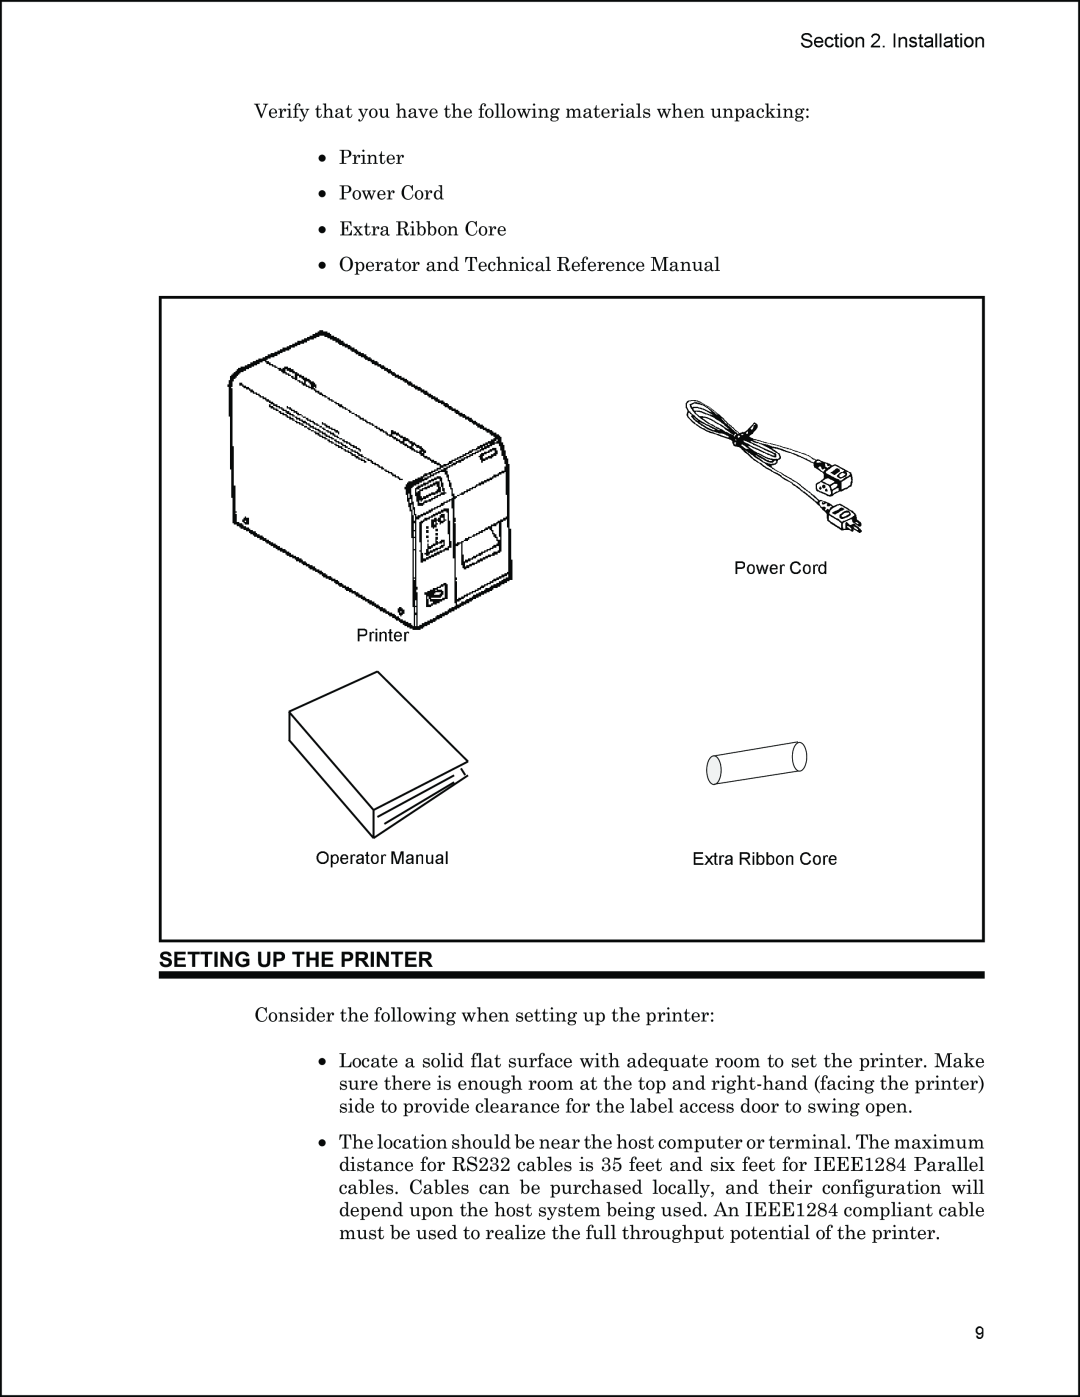 Panduit PTR3E manual Setting Up The Printer, OperatorManual, ExtraRibbonCore 